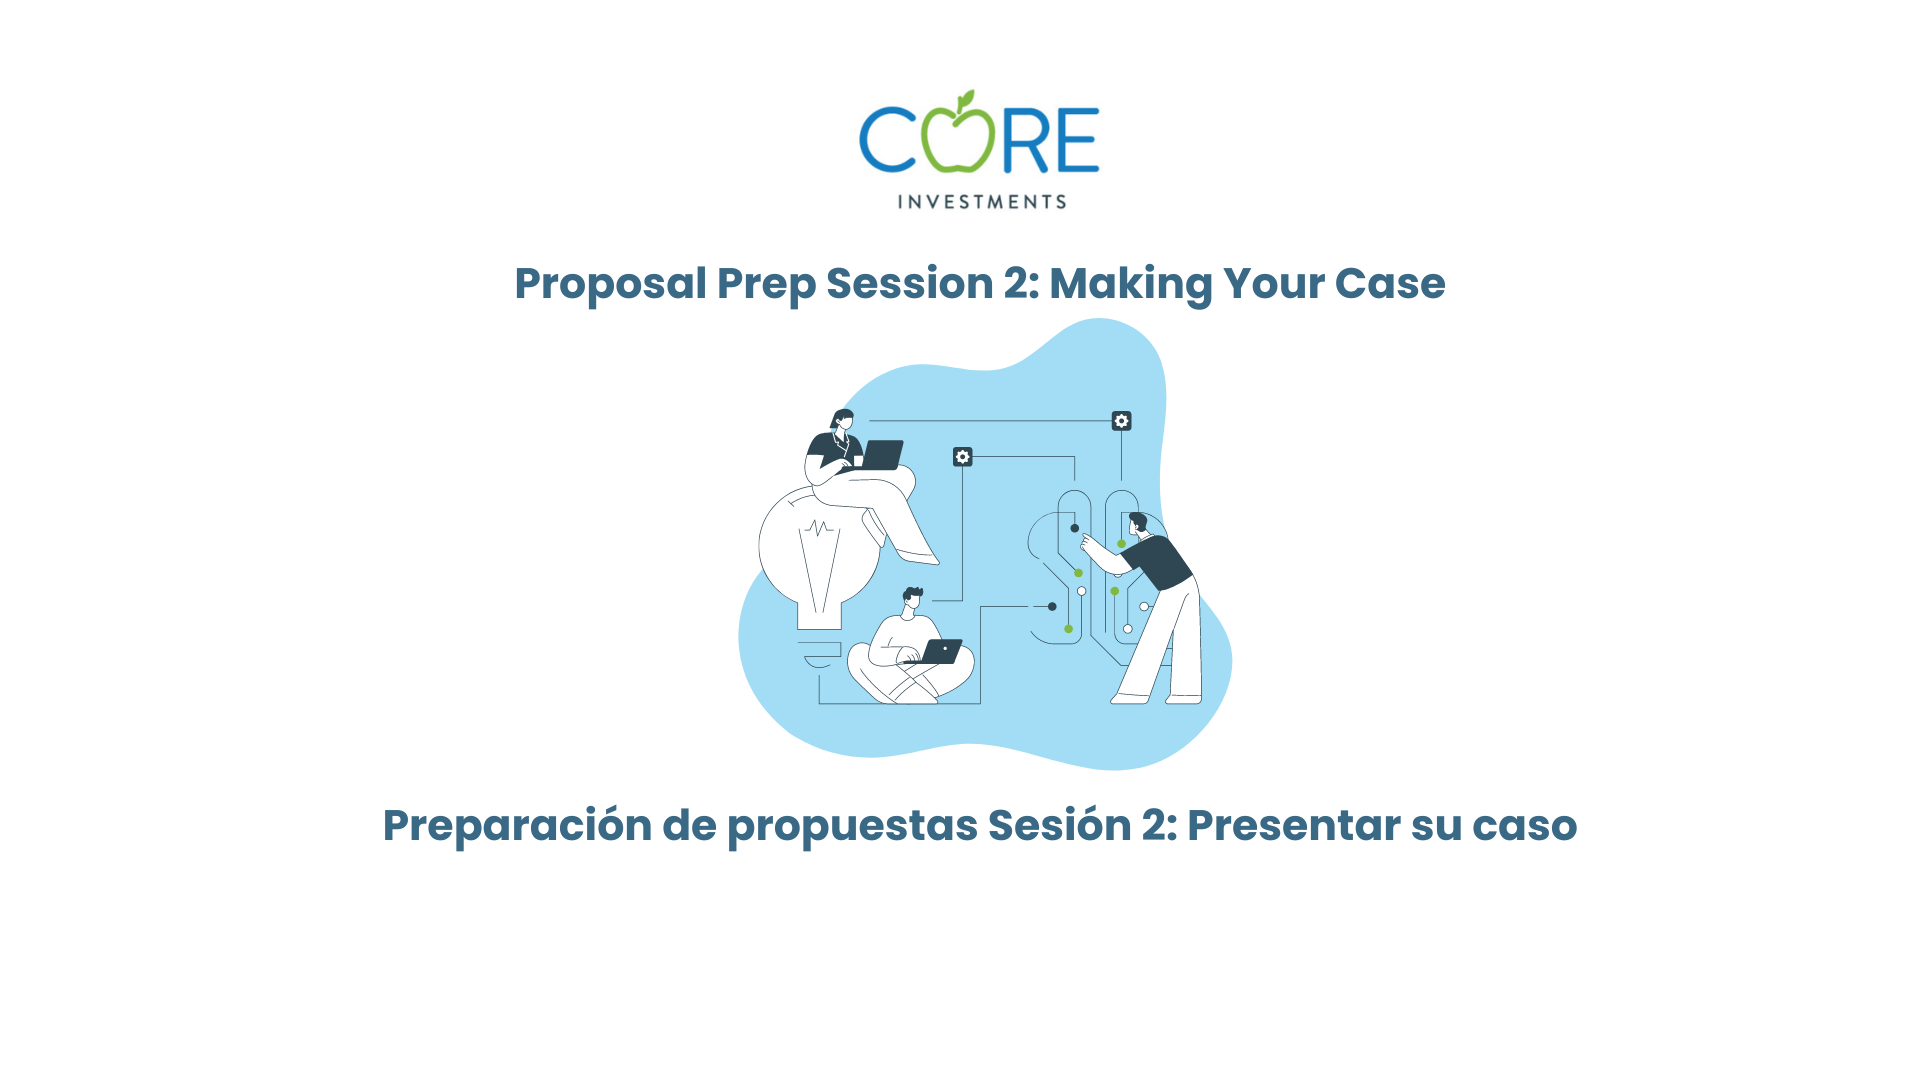 Sesión 2 de preparación de la propuesta: exponga sus argumentos